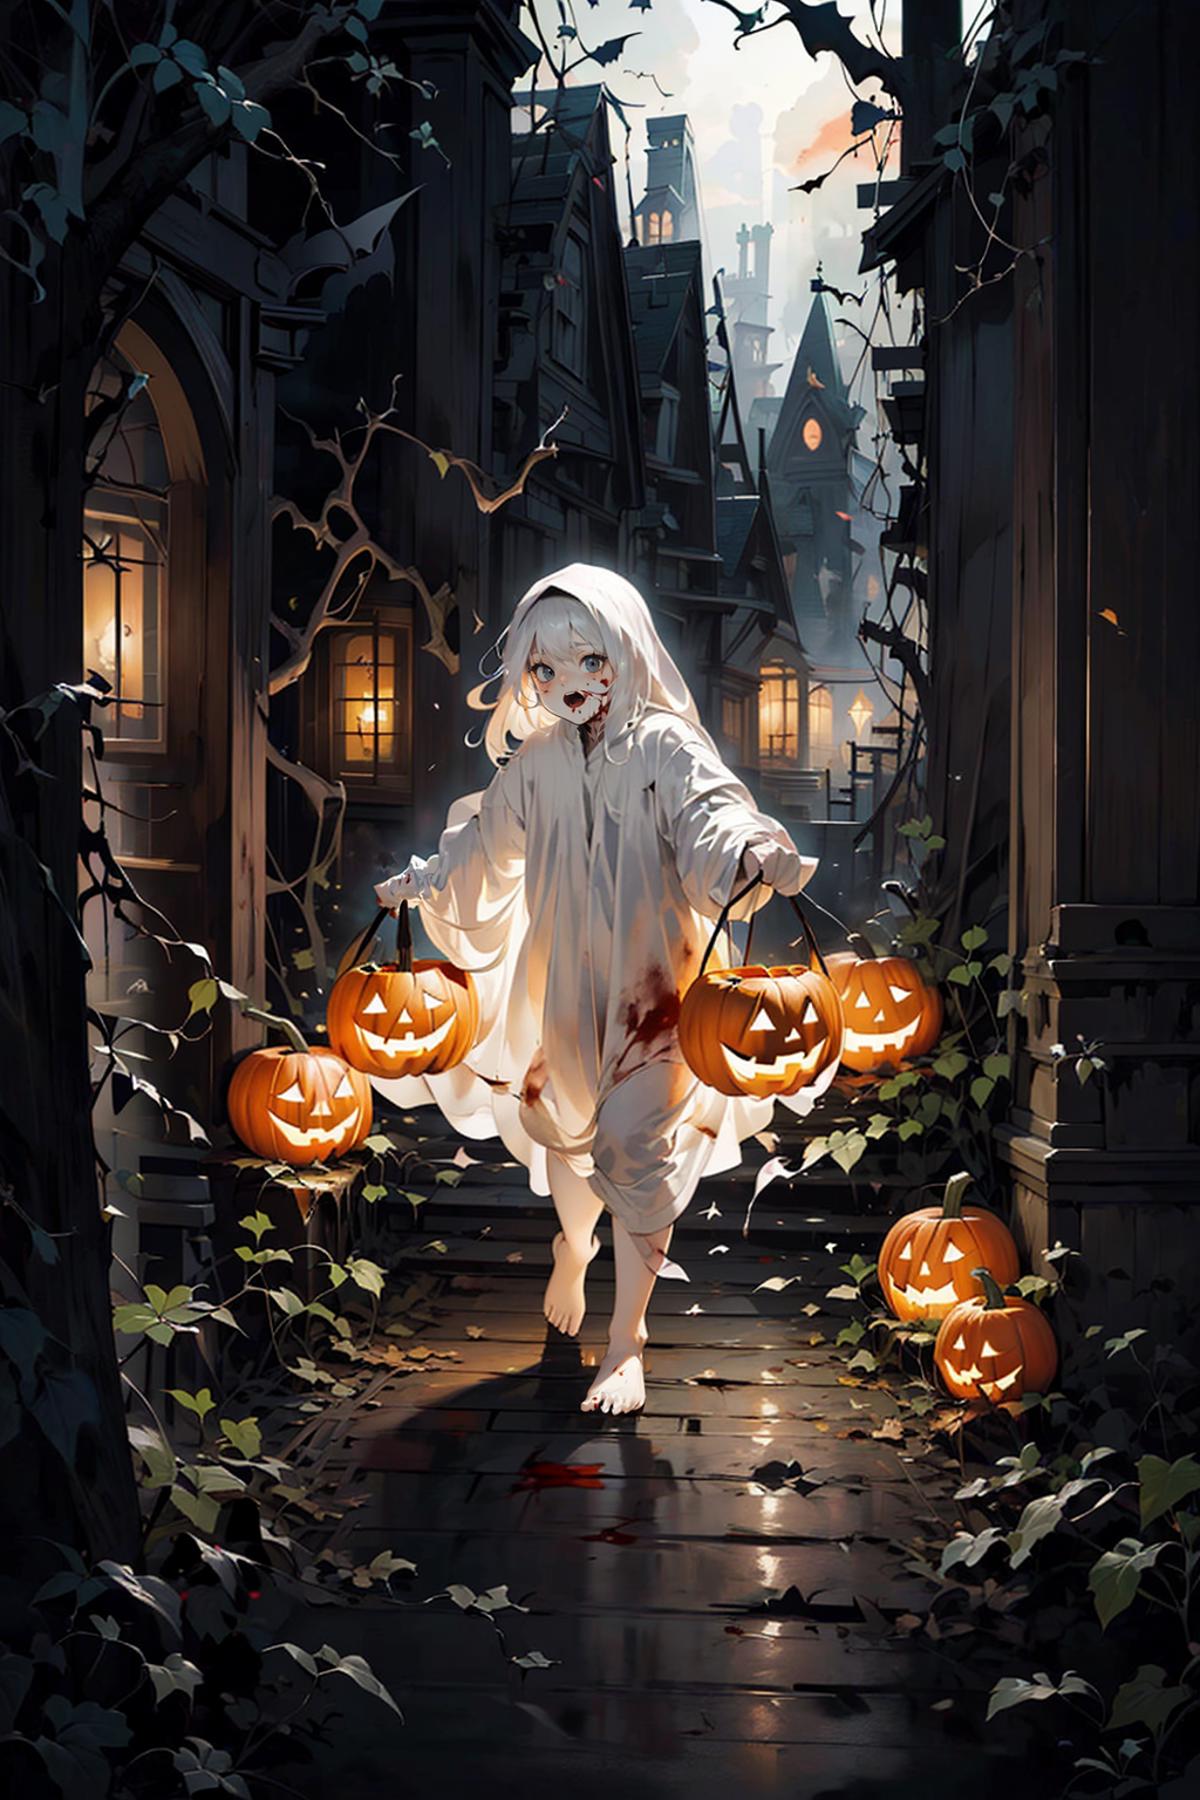 幽灵装·万圣节Ghost costume - Halloween image by Tokugawa